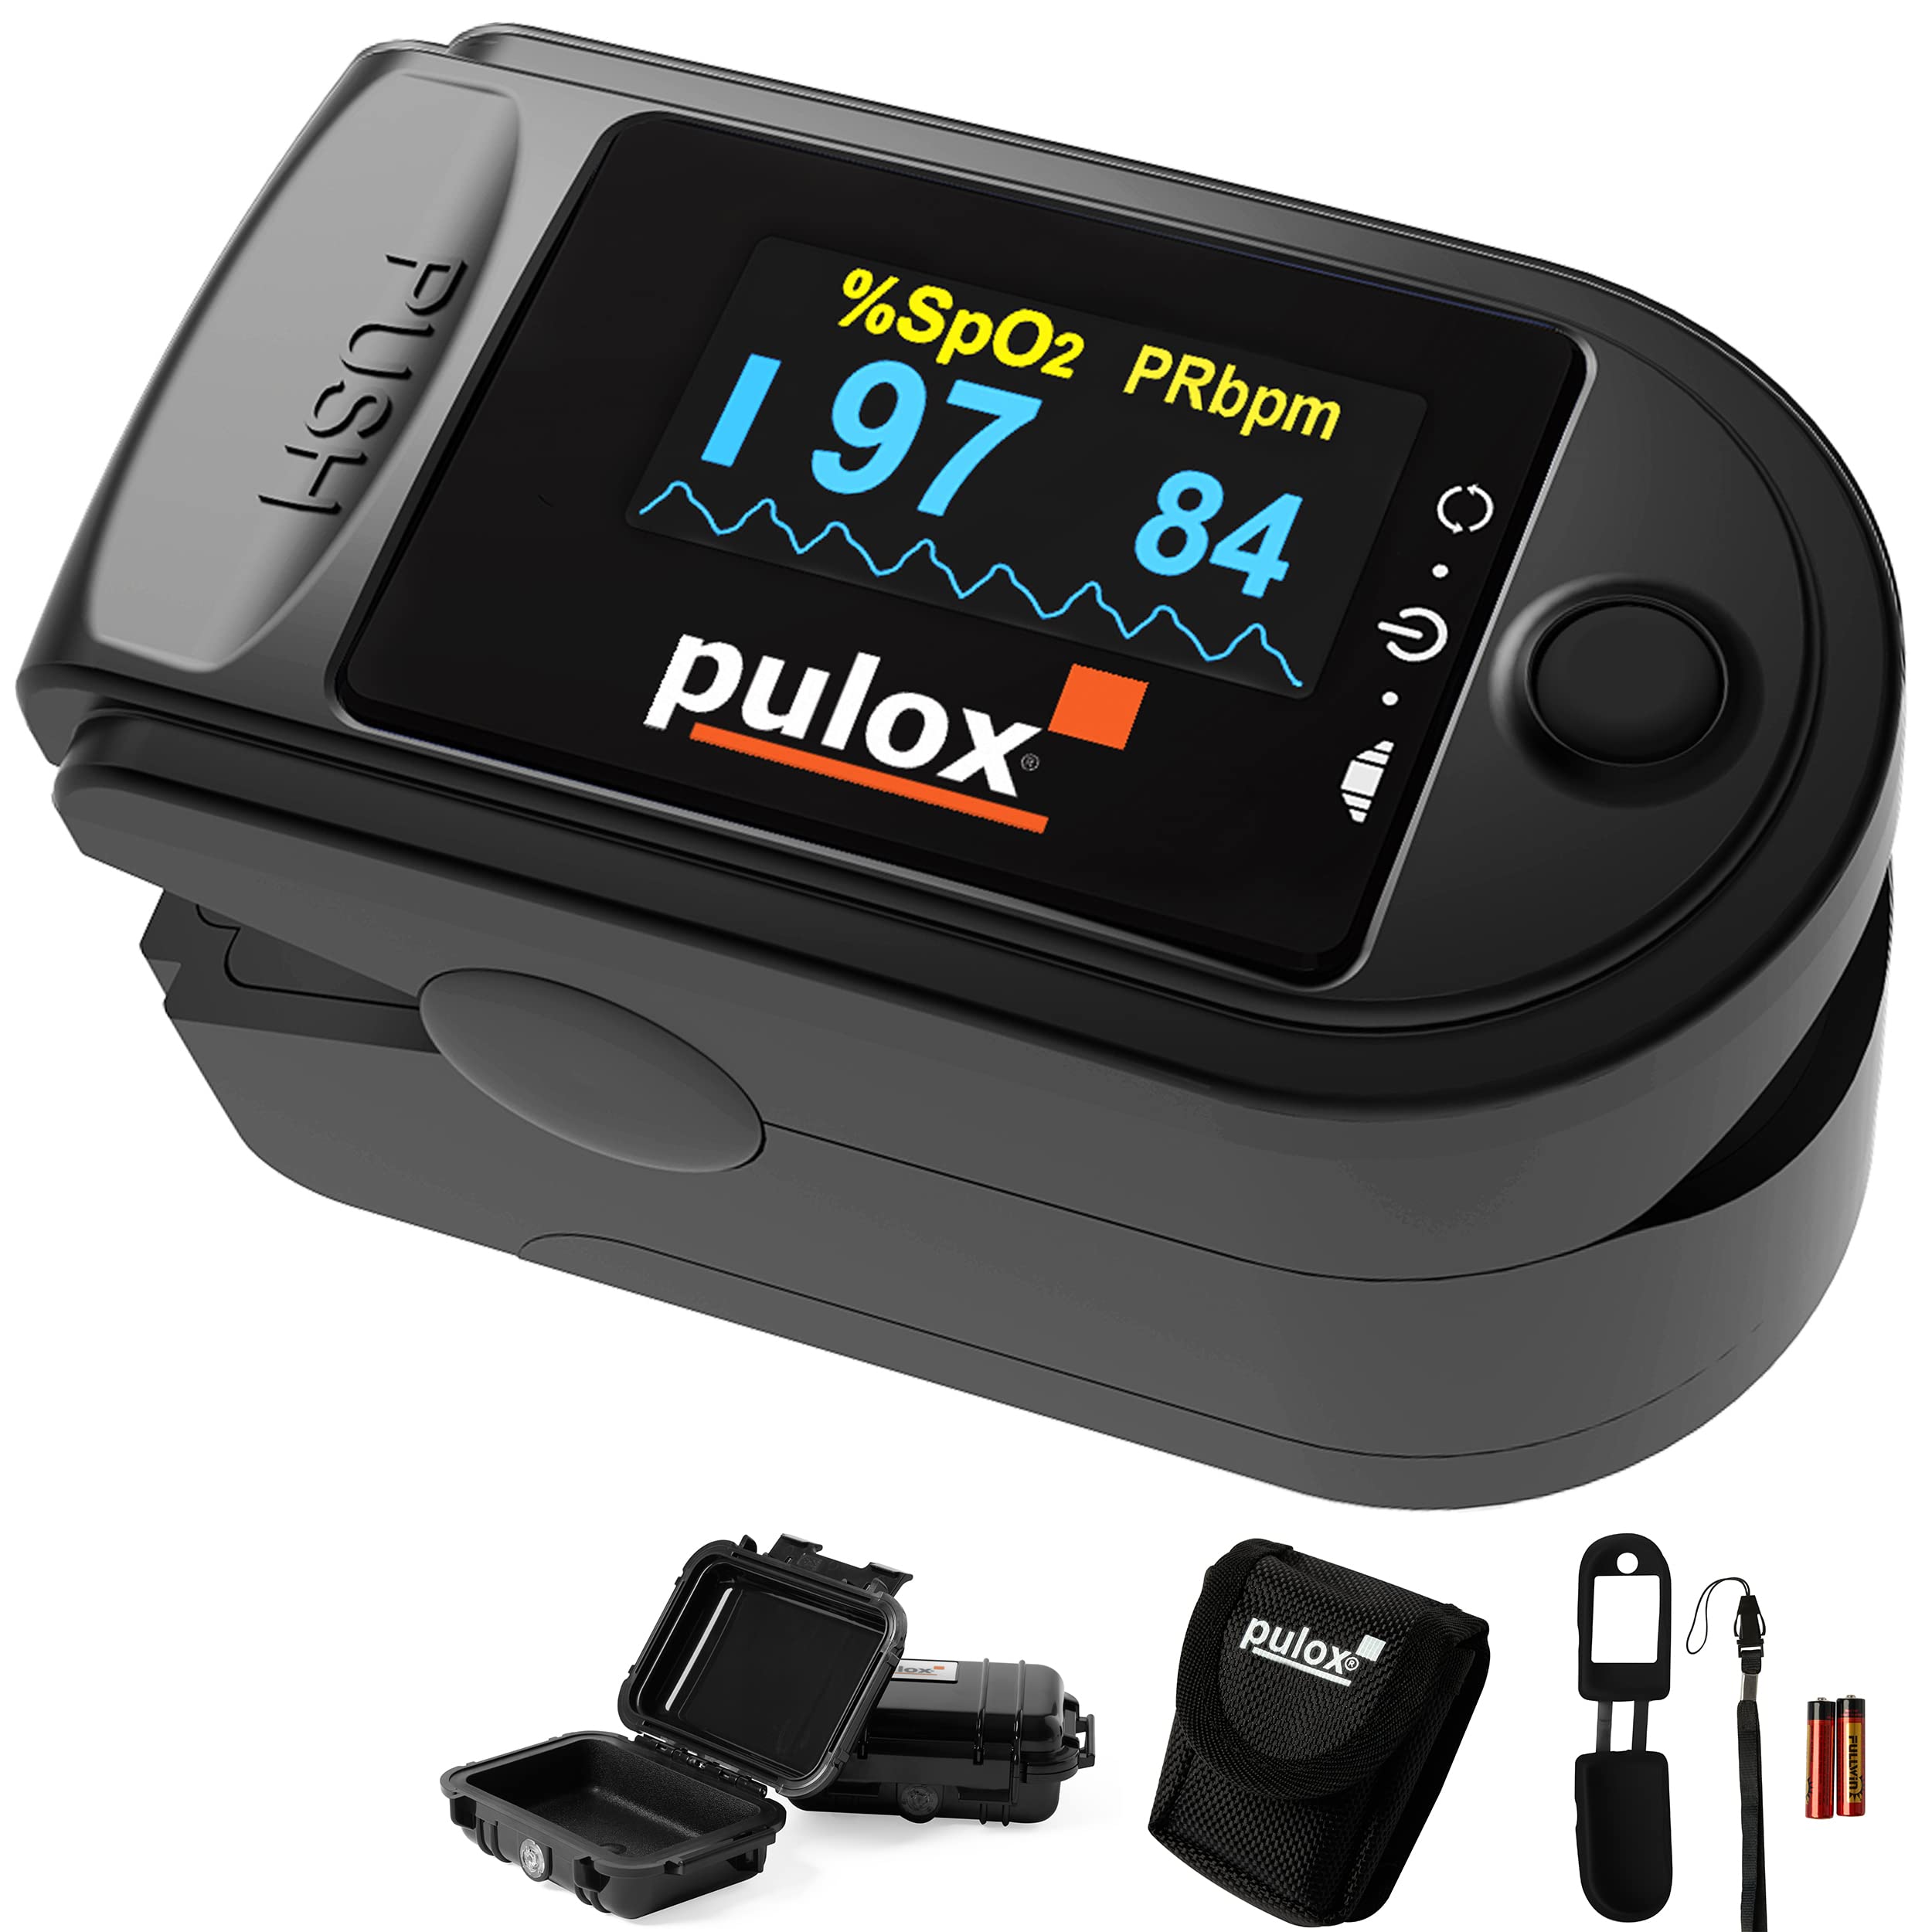 Pulsoximeter Pulox PO-200A mit Alarm, Pulston und Zubehör-Set zur Messung von SpO2, Puls und PI - Schwarz